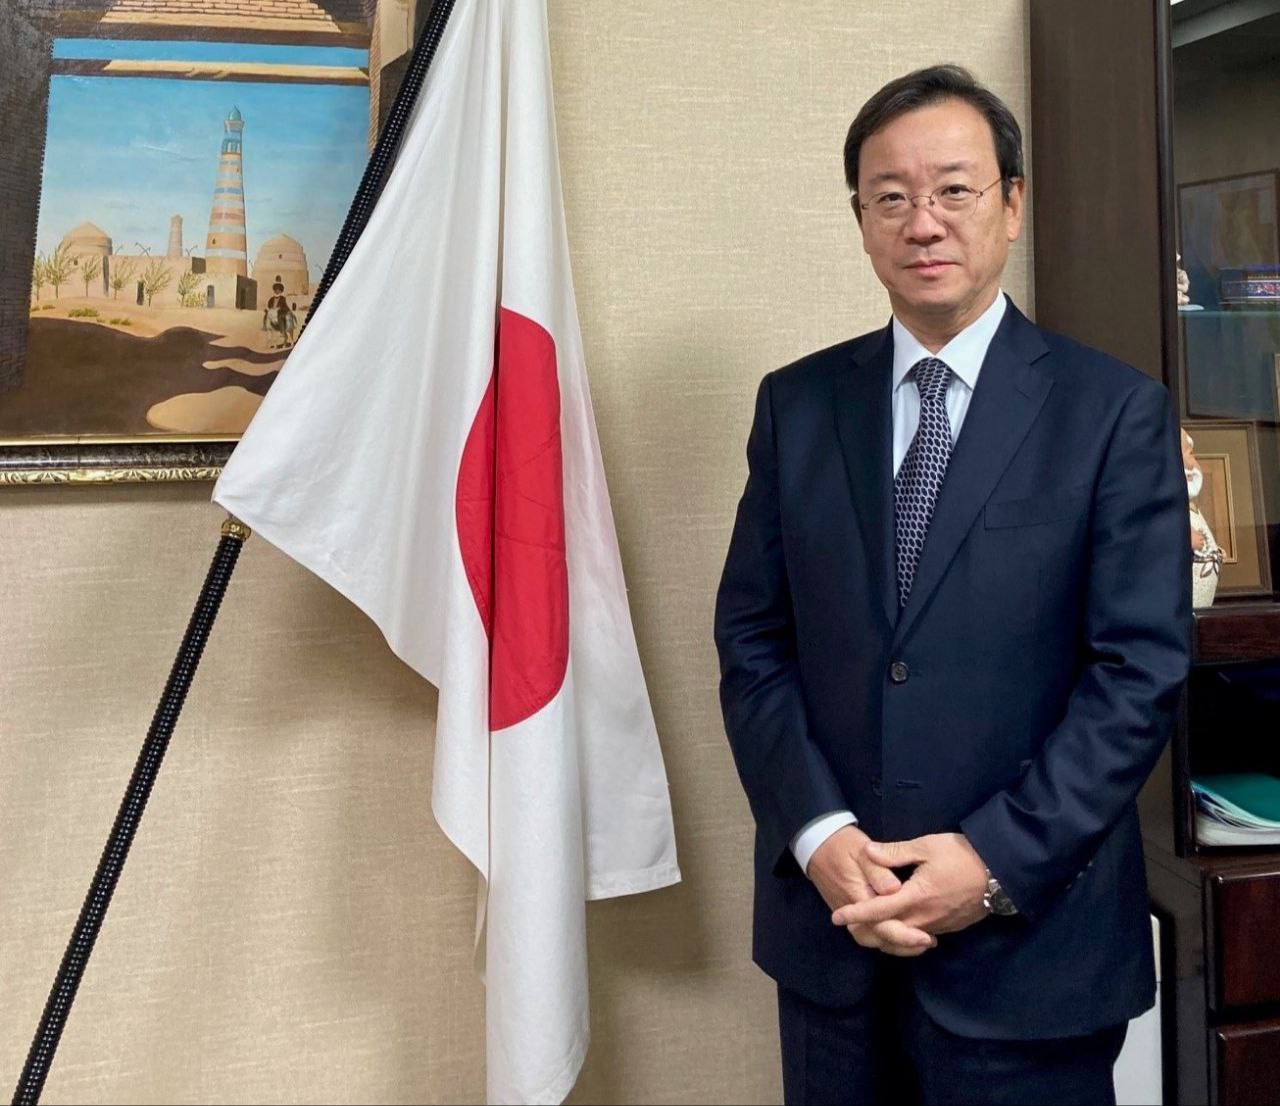 Япония продолжит поддерживать достижение целей развития Узбекистана - посол (Эксклюзивное интервью)